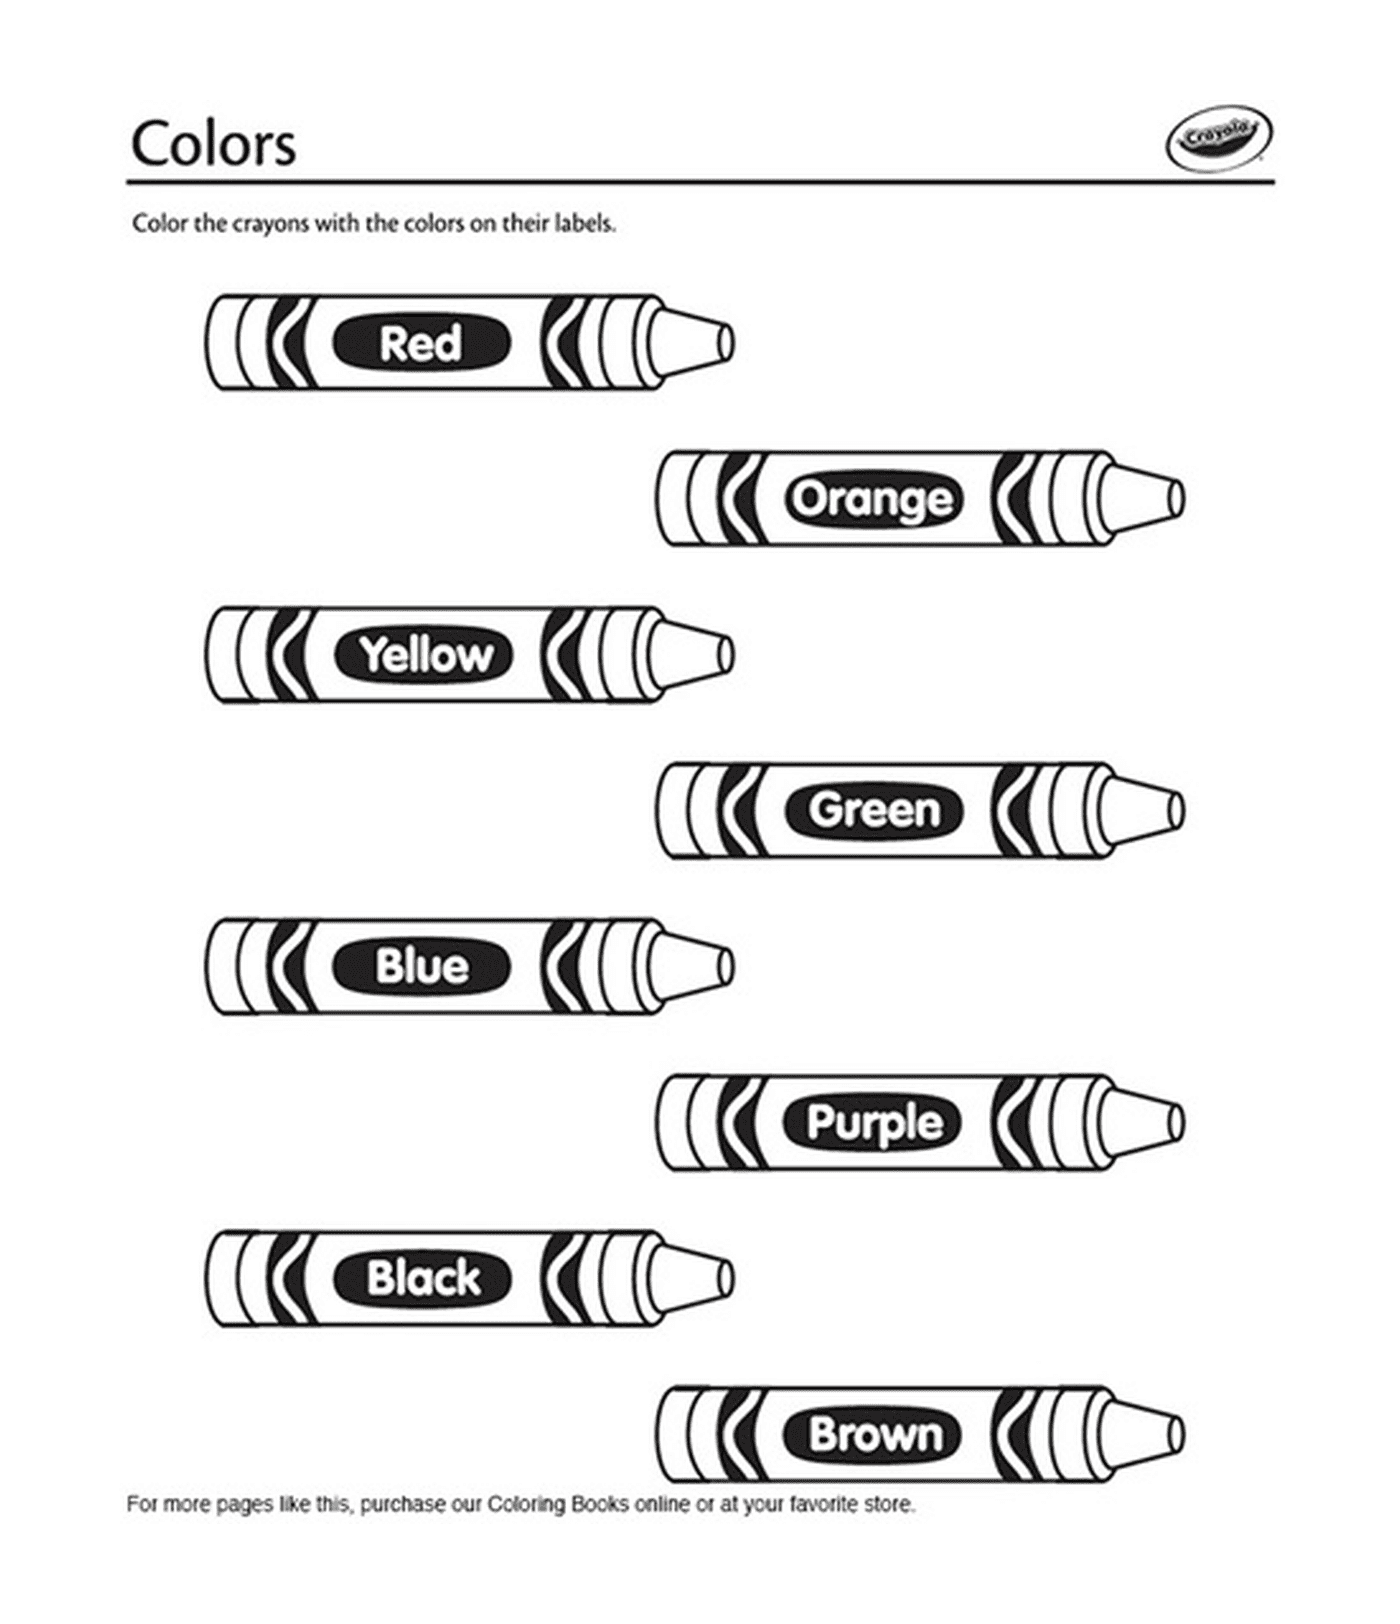  Farbstifte auf Englisch von Crayola 